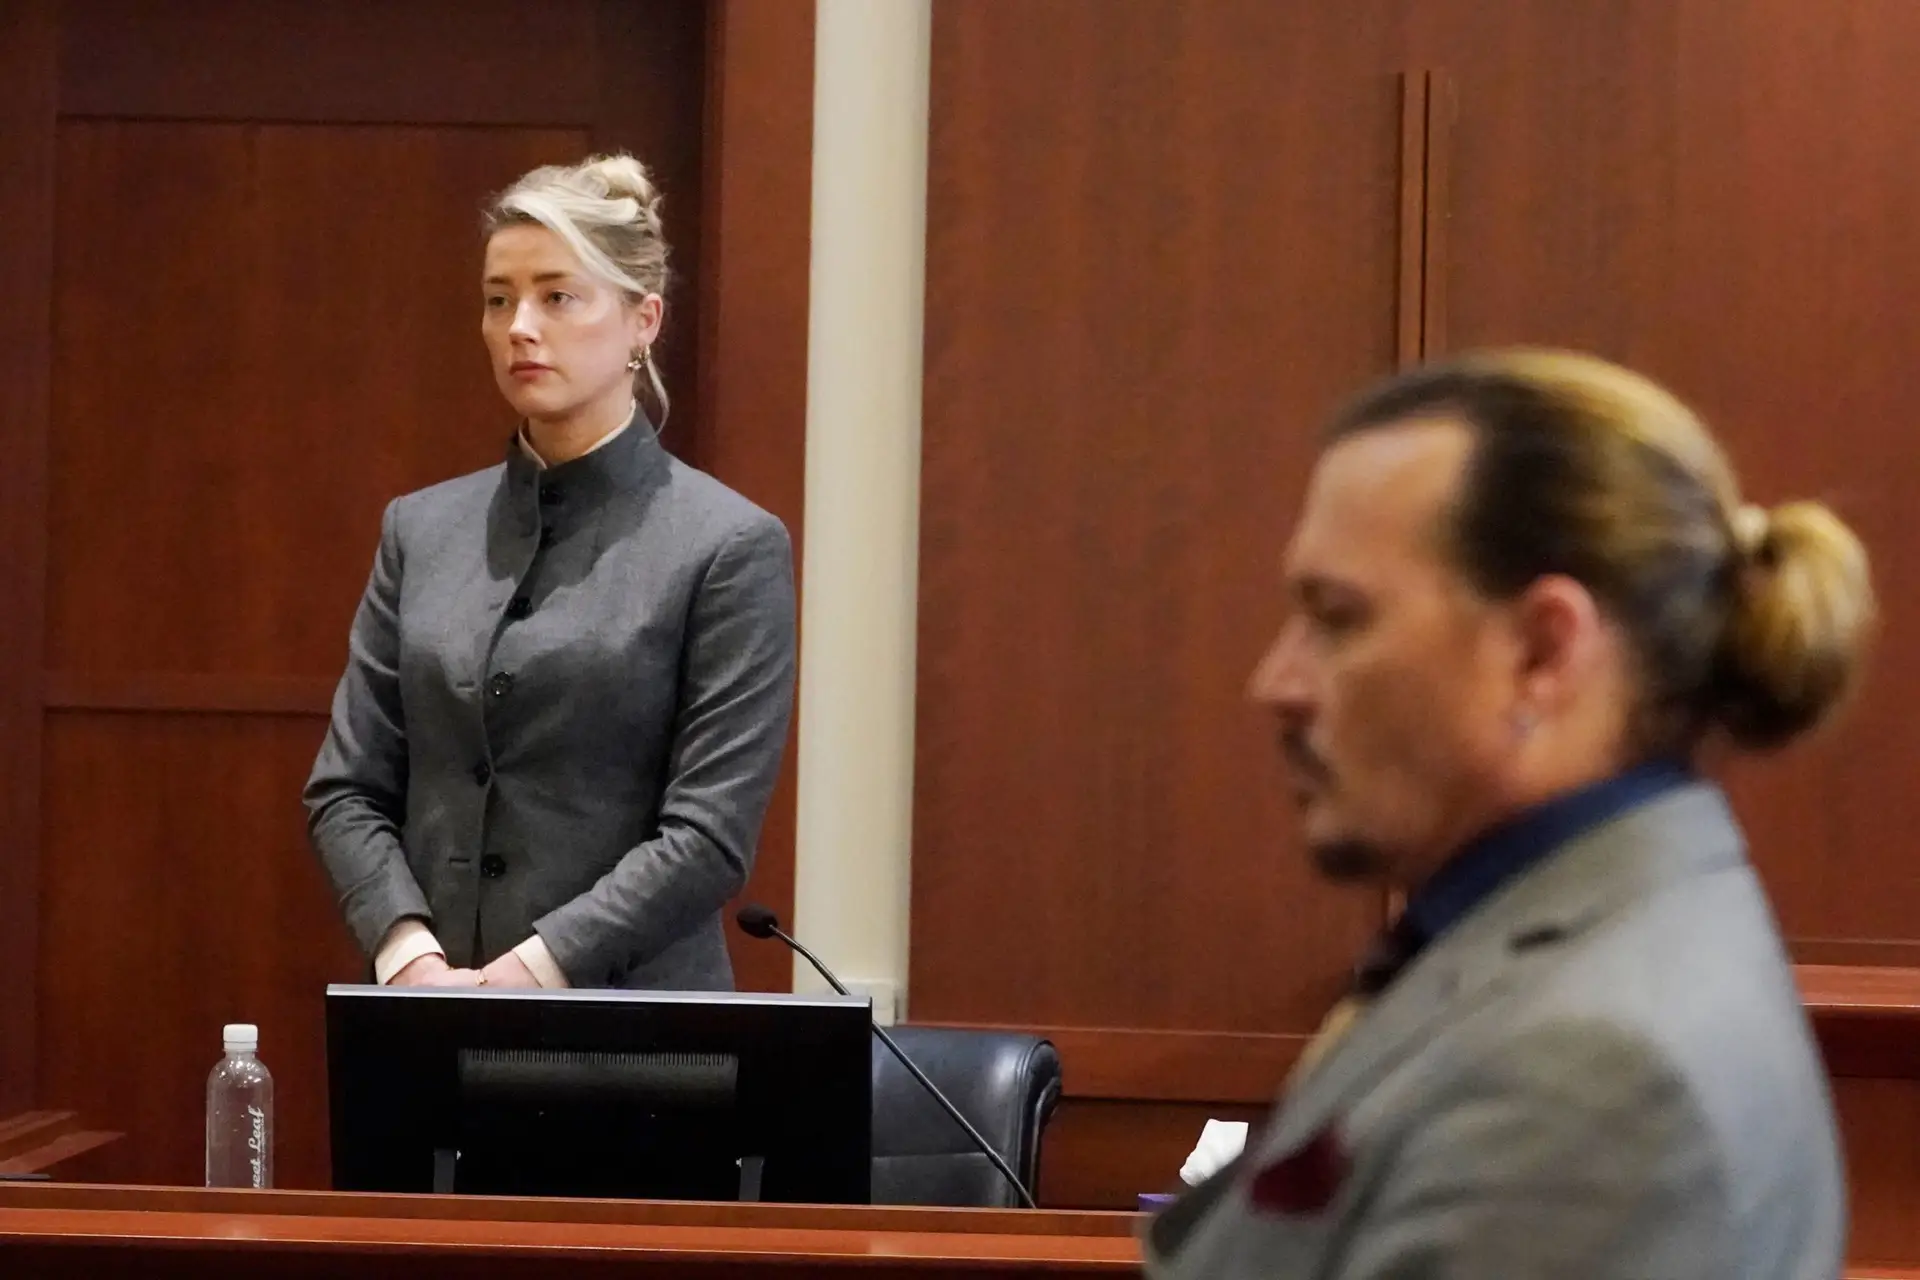 Johnny Depp e Amber Heard: o julgamento e as acusações - SIC Notícias